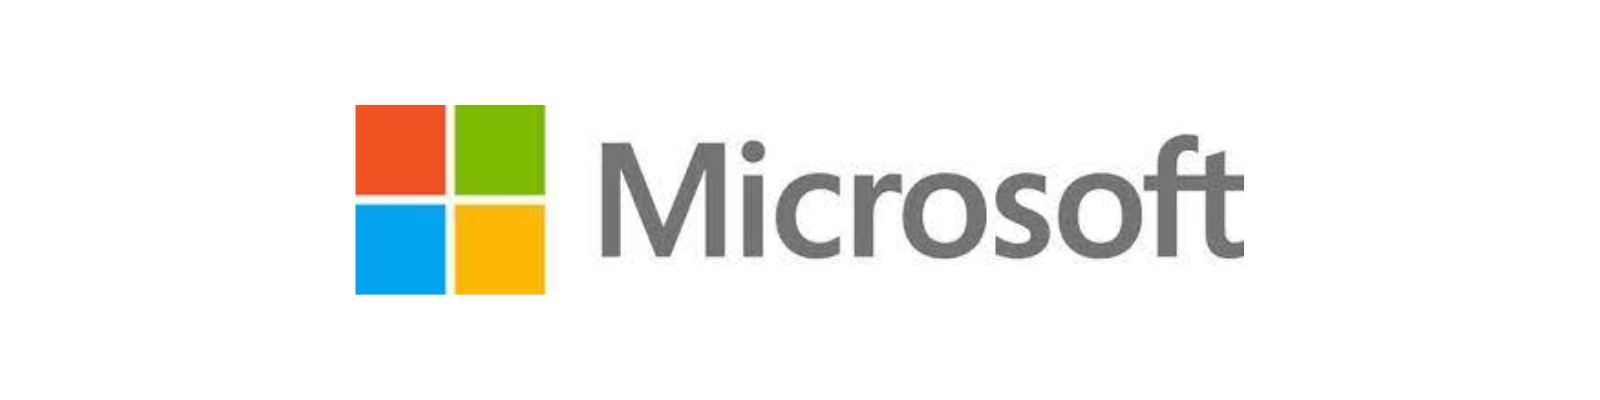 Microsoft é confiável? Conheça todos os detalhes e descubra!